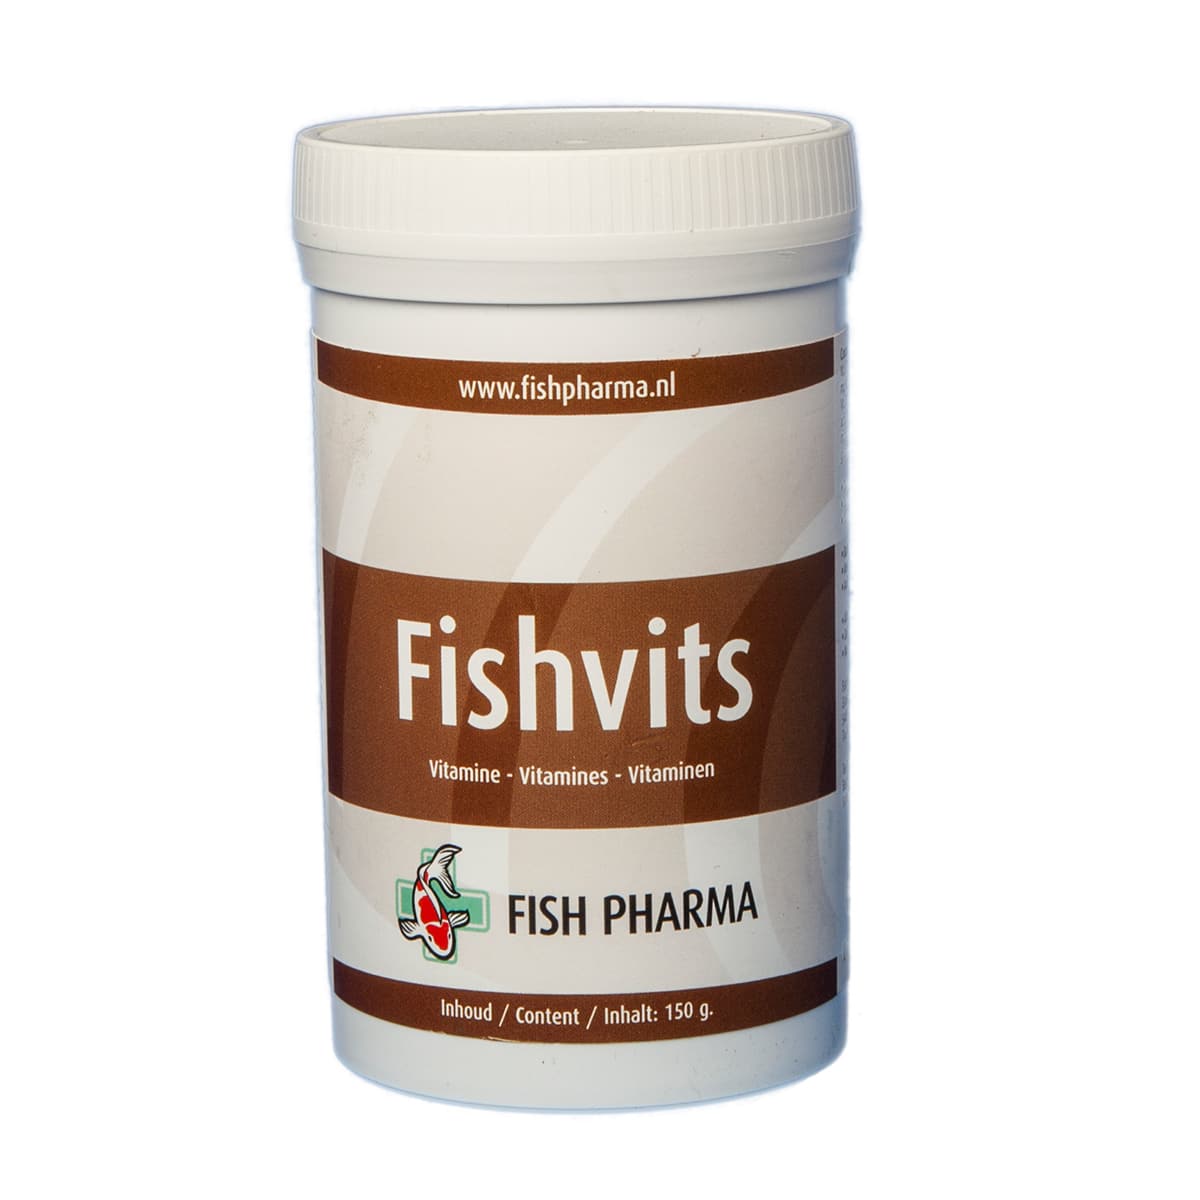 Fish-pharma Fish Pharma Fishvits